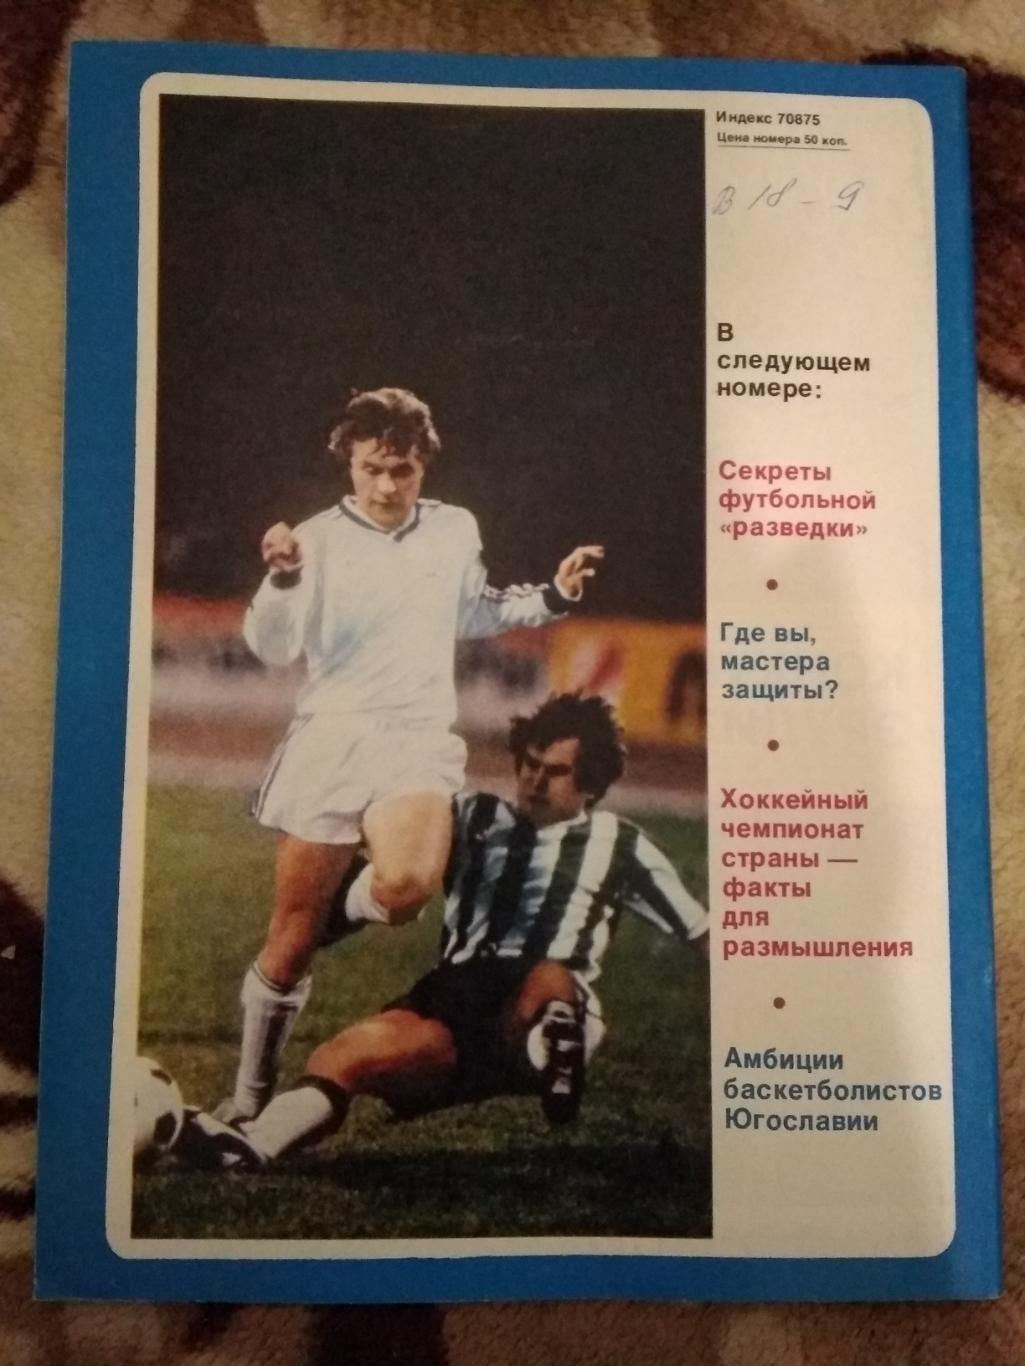 Журнал.Спортивные игры № 4 1987 г. 1